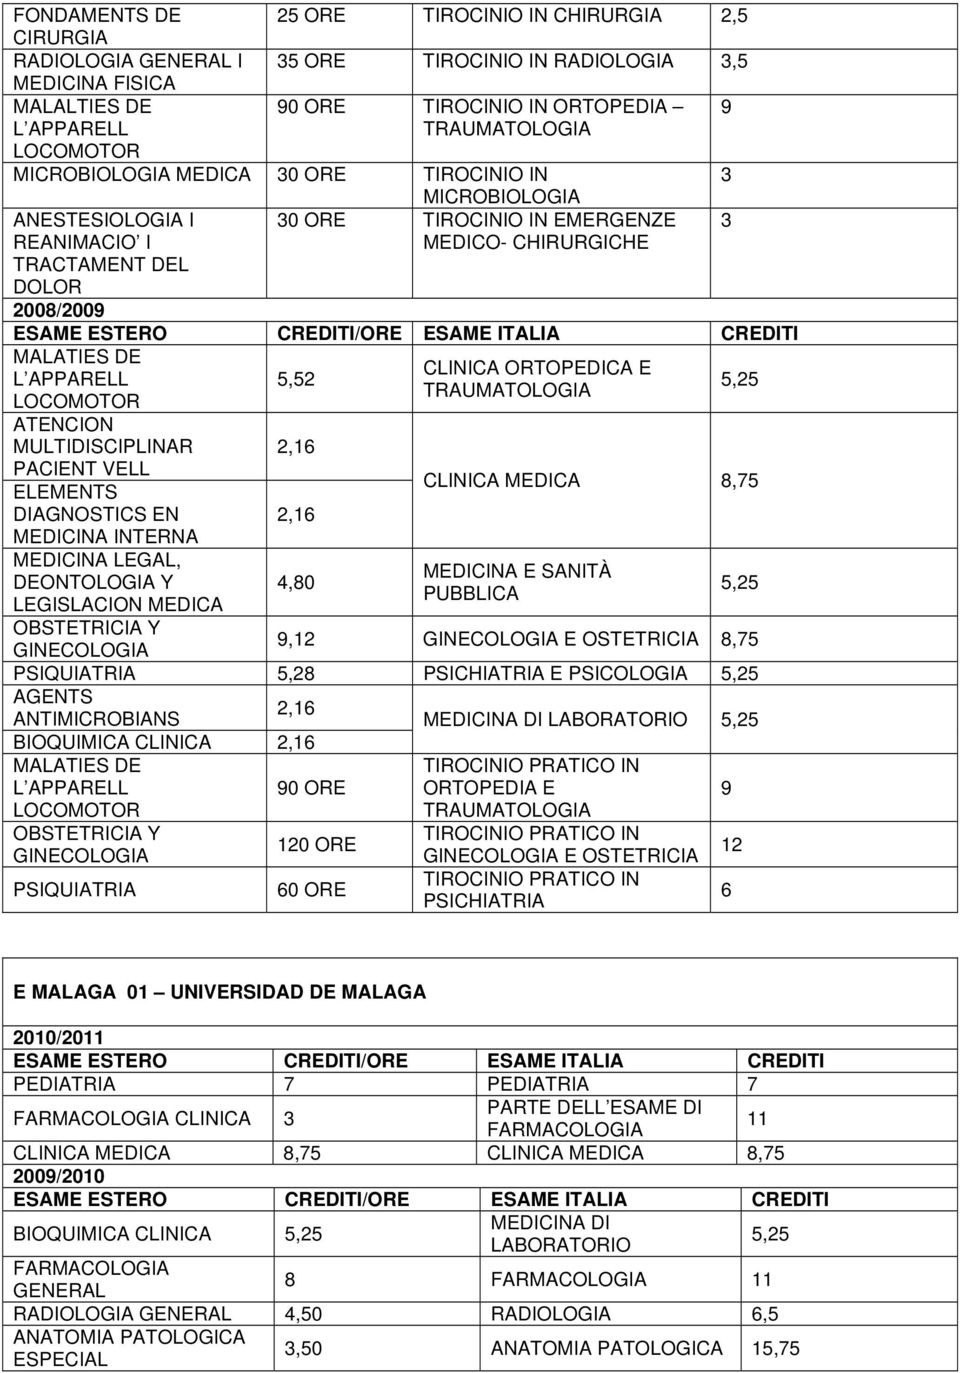 /ORE ESAME ITALIA MALATIES DE L APPARELL LOCOMOTOR ATENCION MULTIDISCIPLINAR PACIENT VELL ELEMENTS DIAGNOSTICS EN MEDICINA INTERNA MEDICINA LEGAL, DEONTOLOGIA Y LEGISLACION MEDICA 5,52 2,16 2,16 4,80